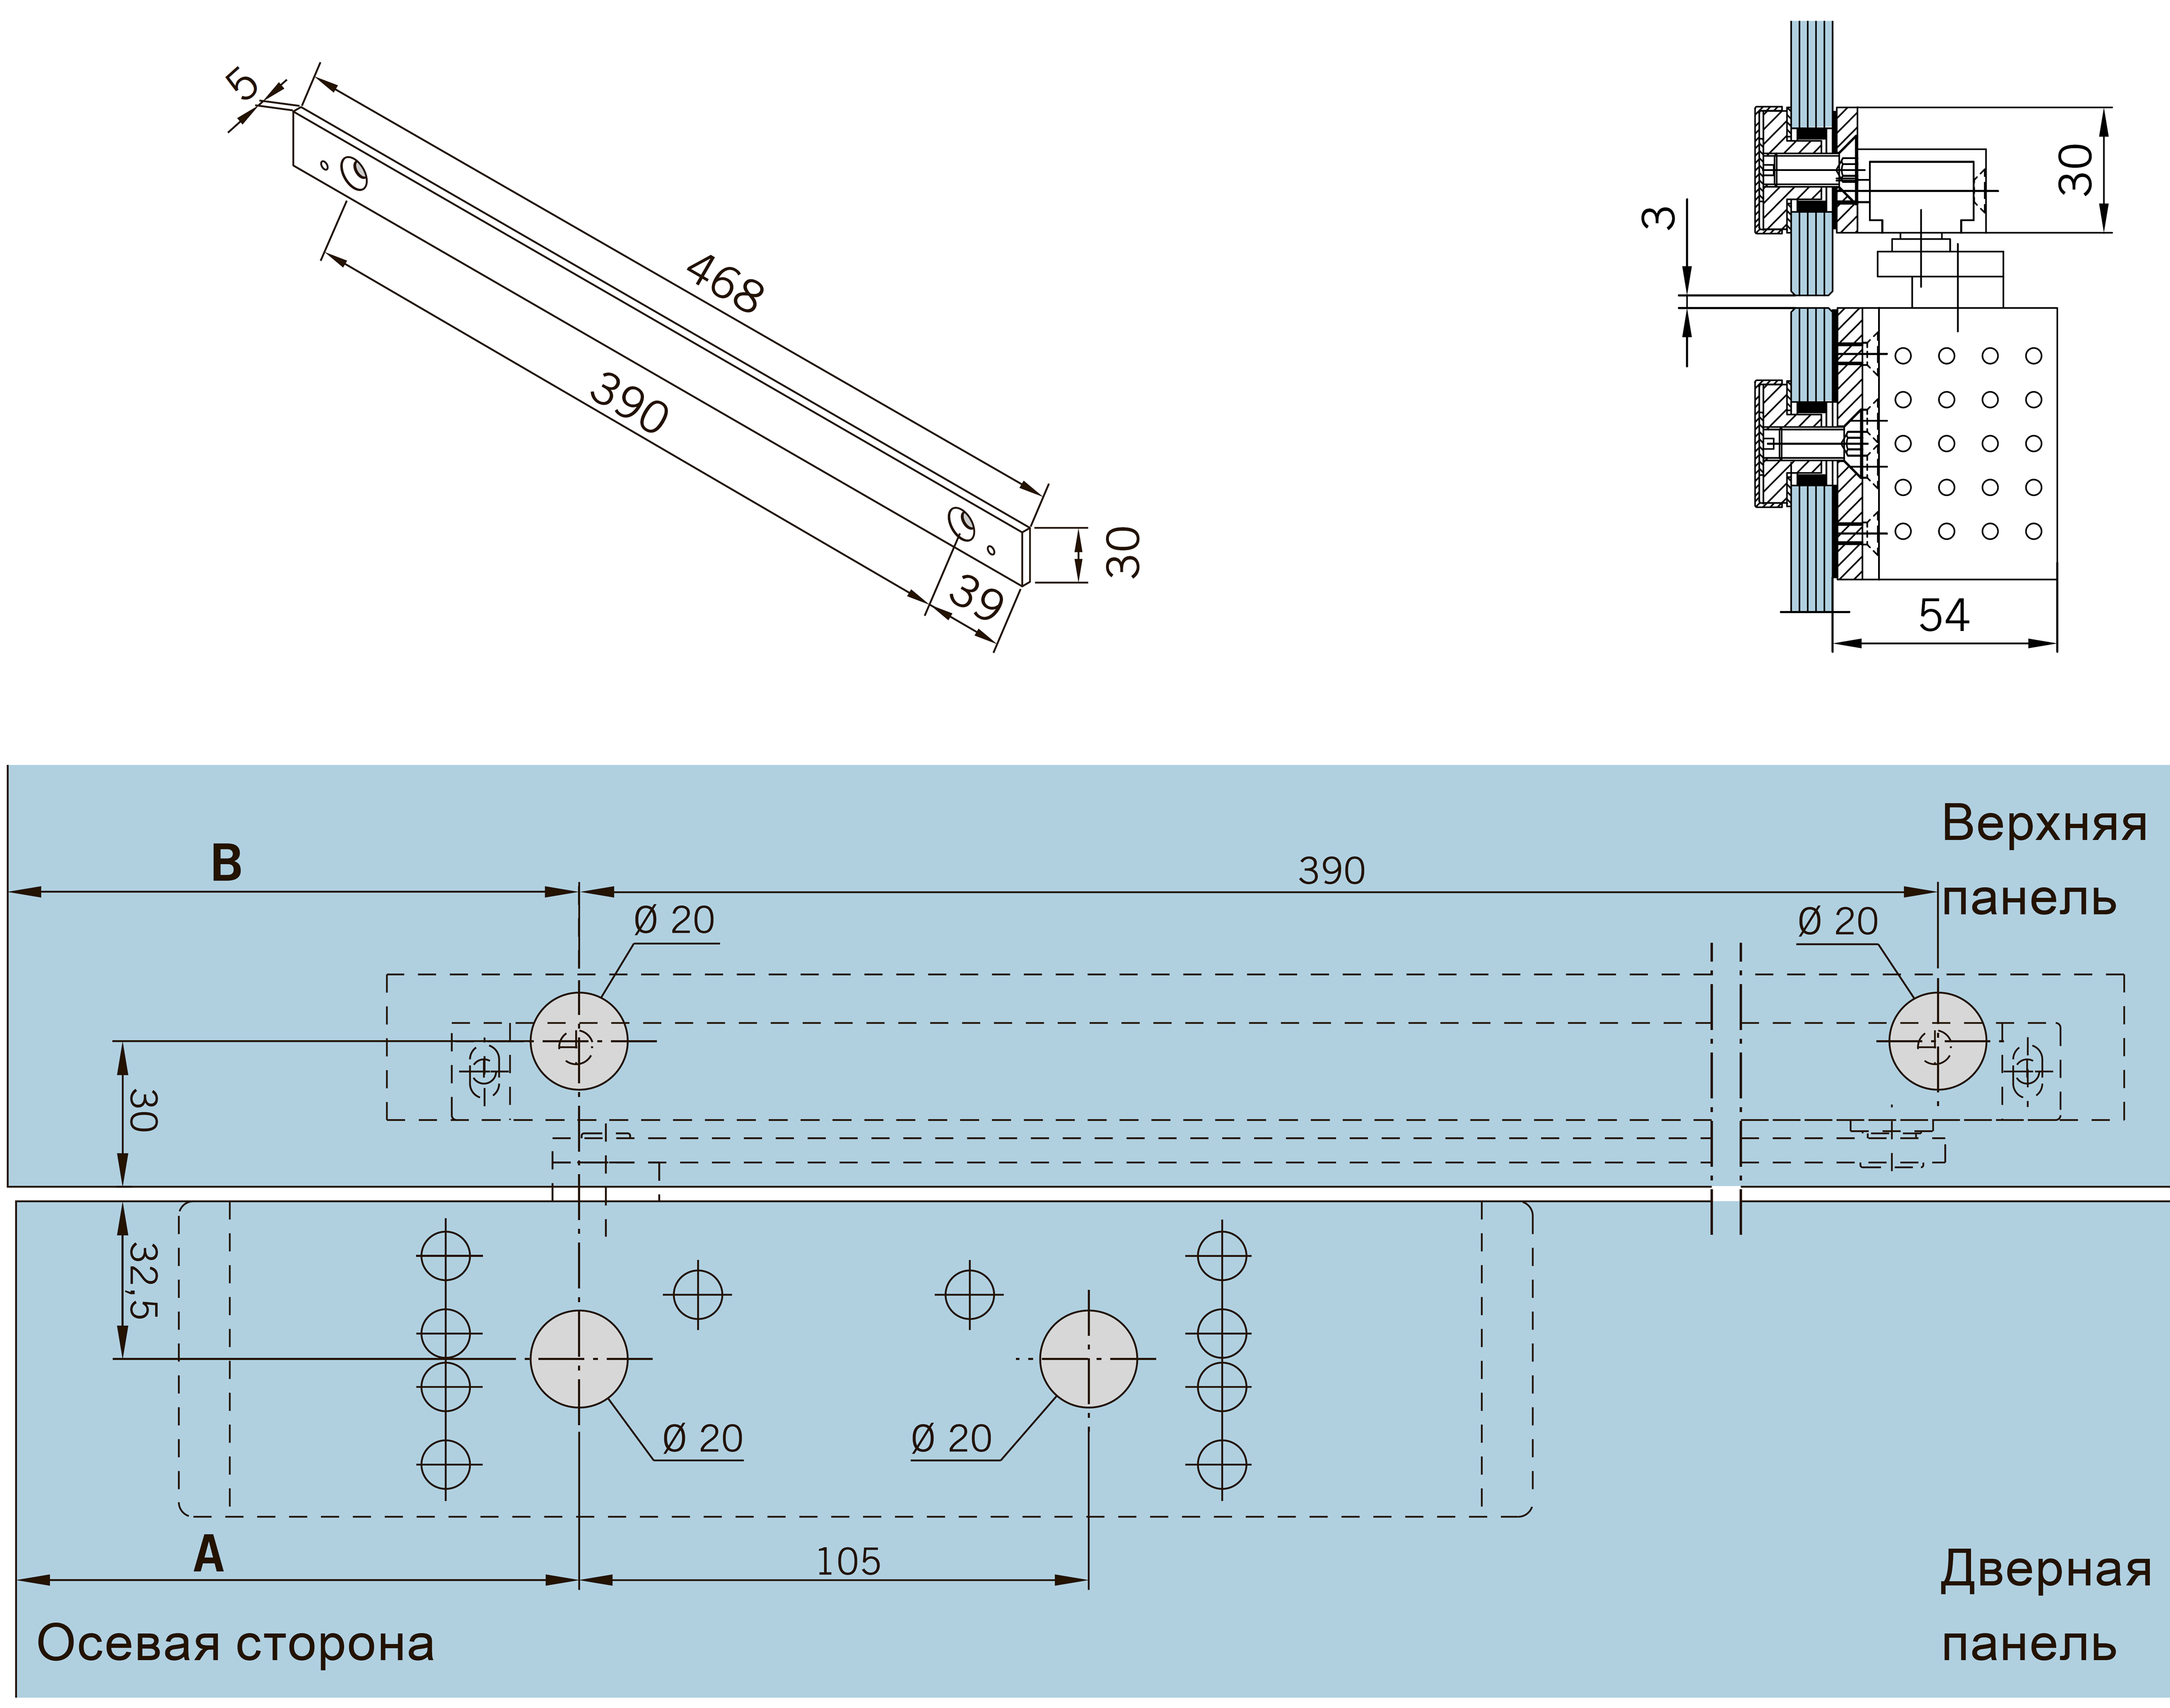 Размеры и способ крепления монтажной пластины для скользящего канала G-N доводчика DORMA TS 92, установка на фрамугу